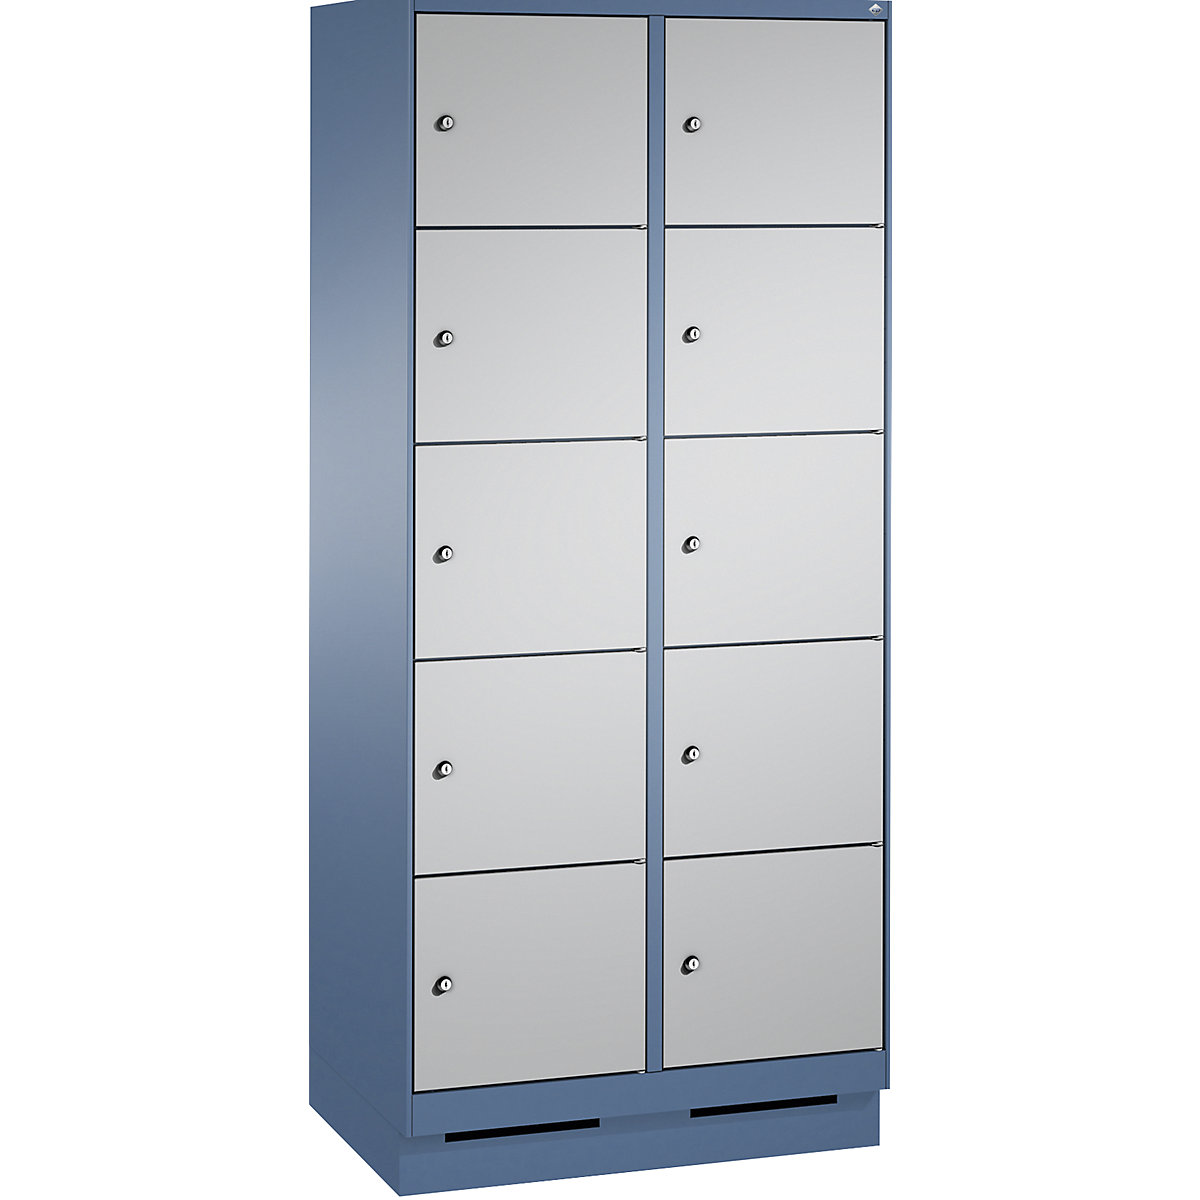 Armoire à casiers sur socle EVOLO – C+P, 2 compartiments, 5 casiers chacun, largeur compartiments 400 mm, bleu distant / aluminium-4